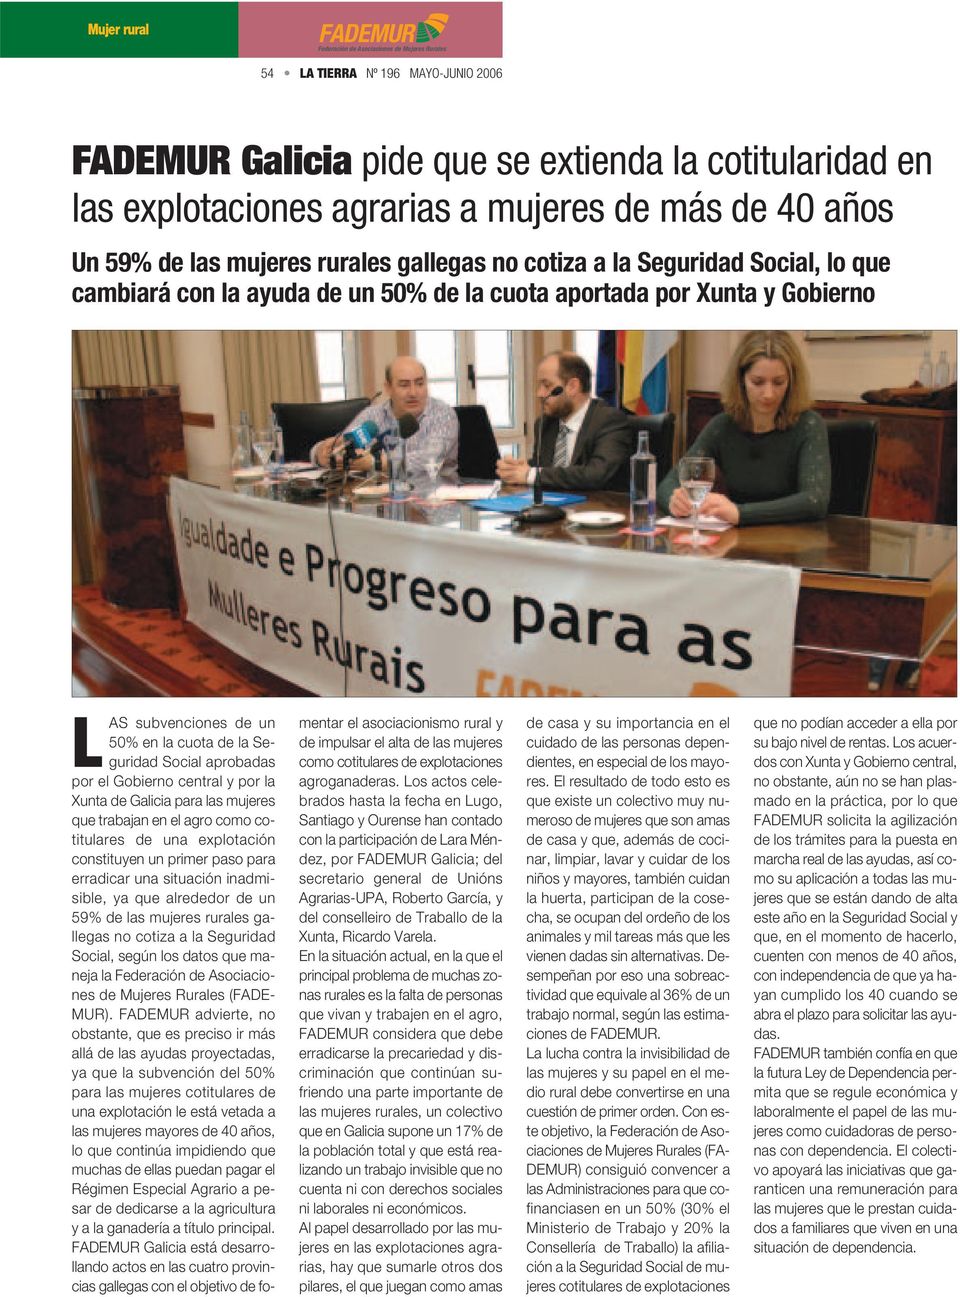 por la Xunta de Galicia para las mujeres que trabajan en el agro como cotitulares de una explotación constituyen un primer paso para erradicar una situación inadmisible, ya que alrededor de un 59% de